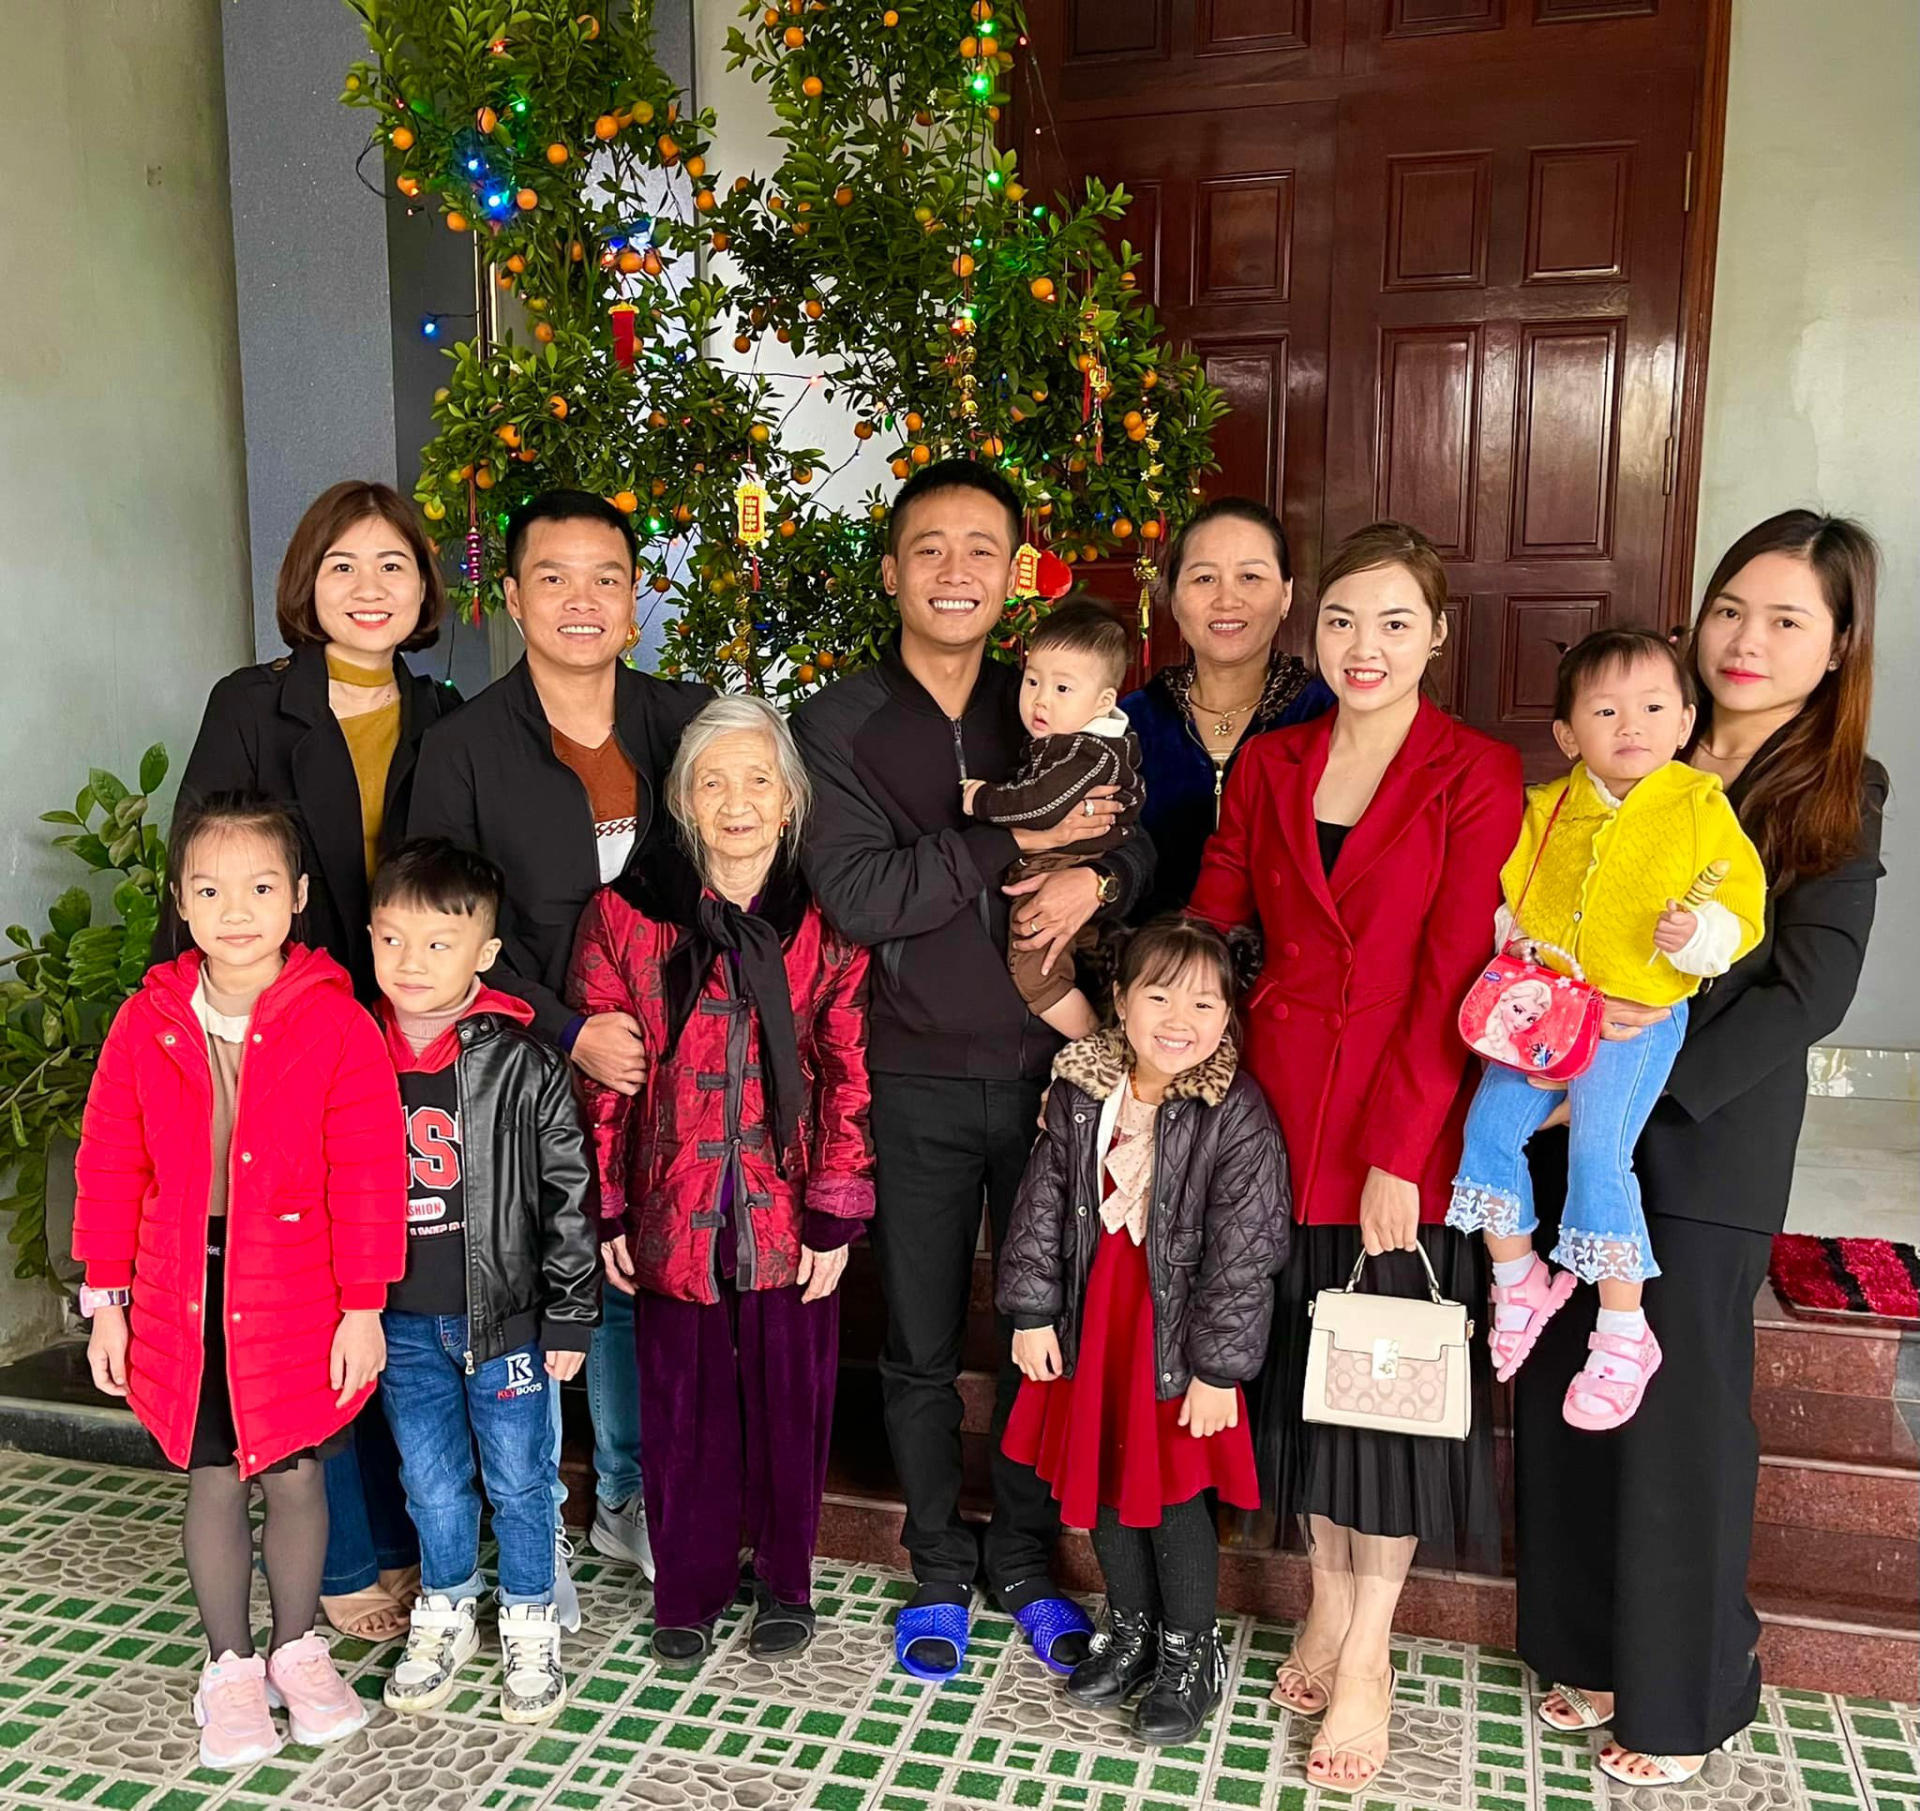 Anh rất hiếm khi chia sẻ hình ảnh gia đình vì không có nhiều có hội về Việt Nam. Ảnh: FBNV